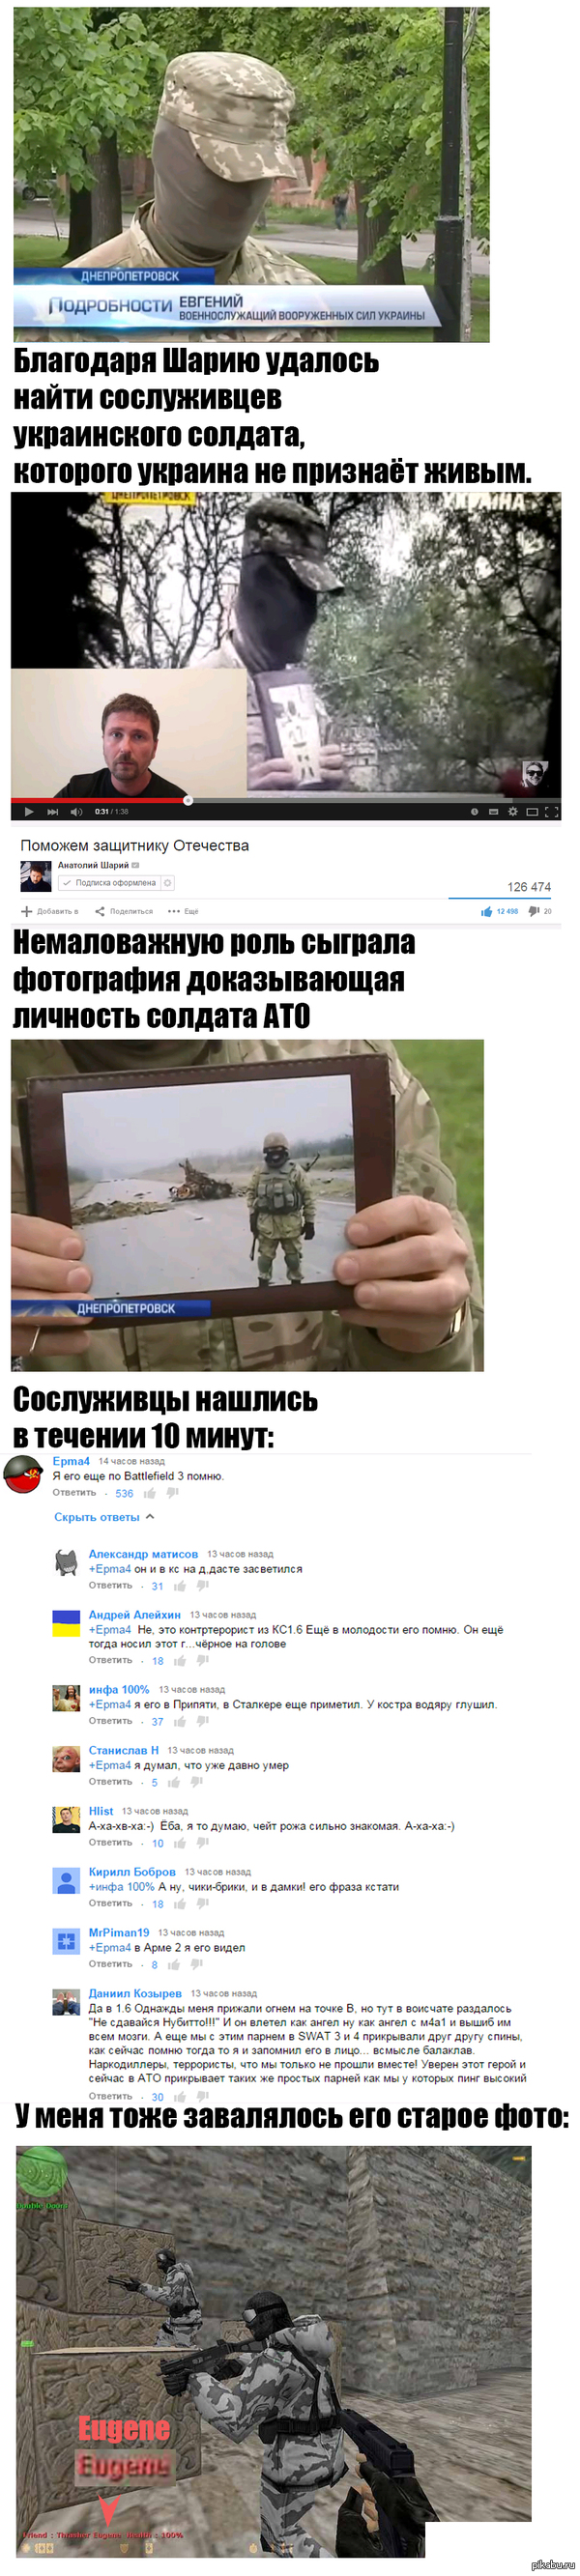  !:)   !   :  http://podrobnosti.ua/2033415-ranenogo-na-donbasse-soldata-ne-priznajut-zhivym.html  :  http://www.youtube.com/watch?v=4Q9fuuPoZbc